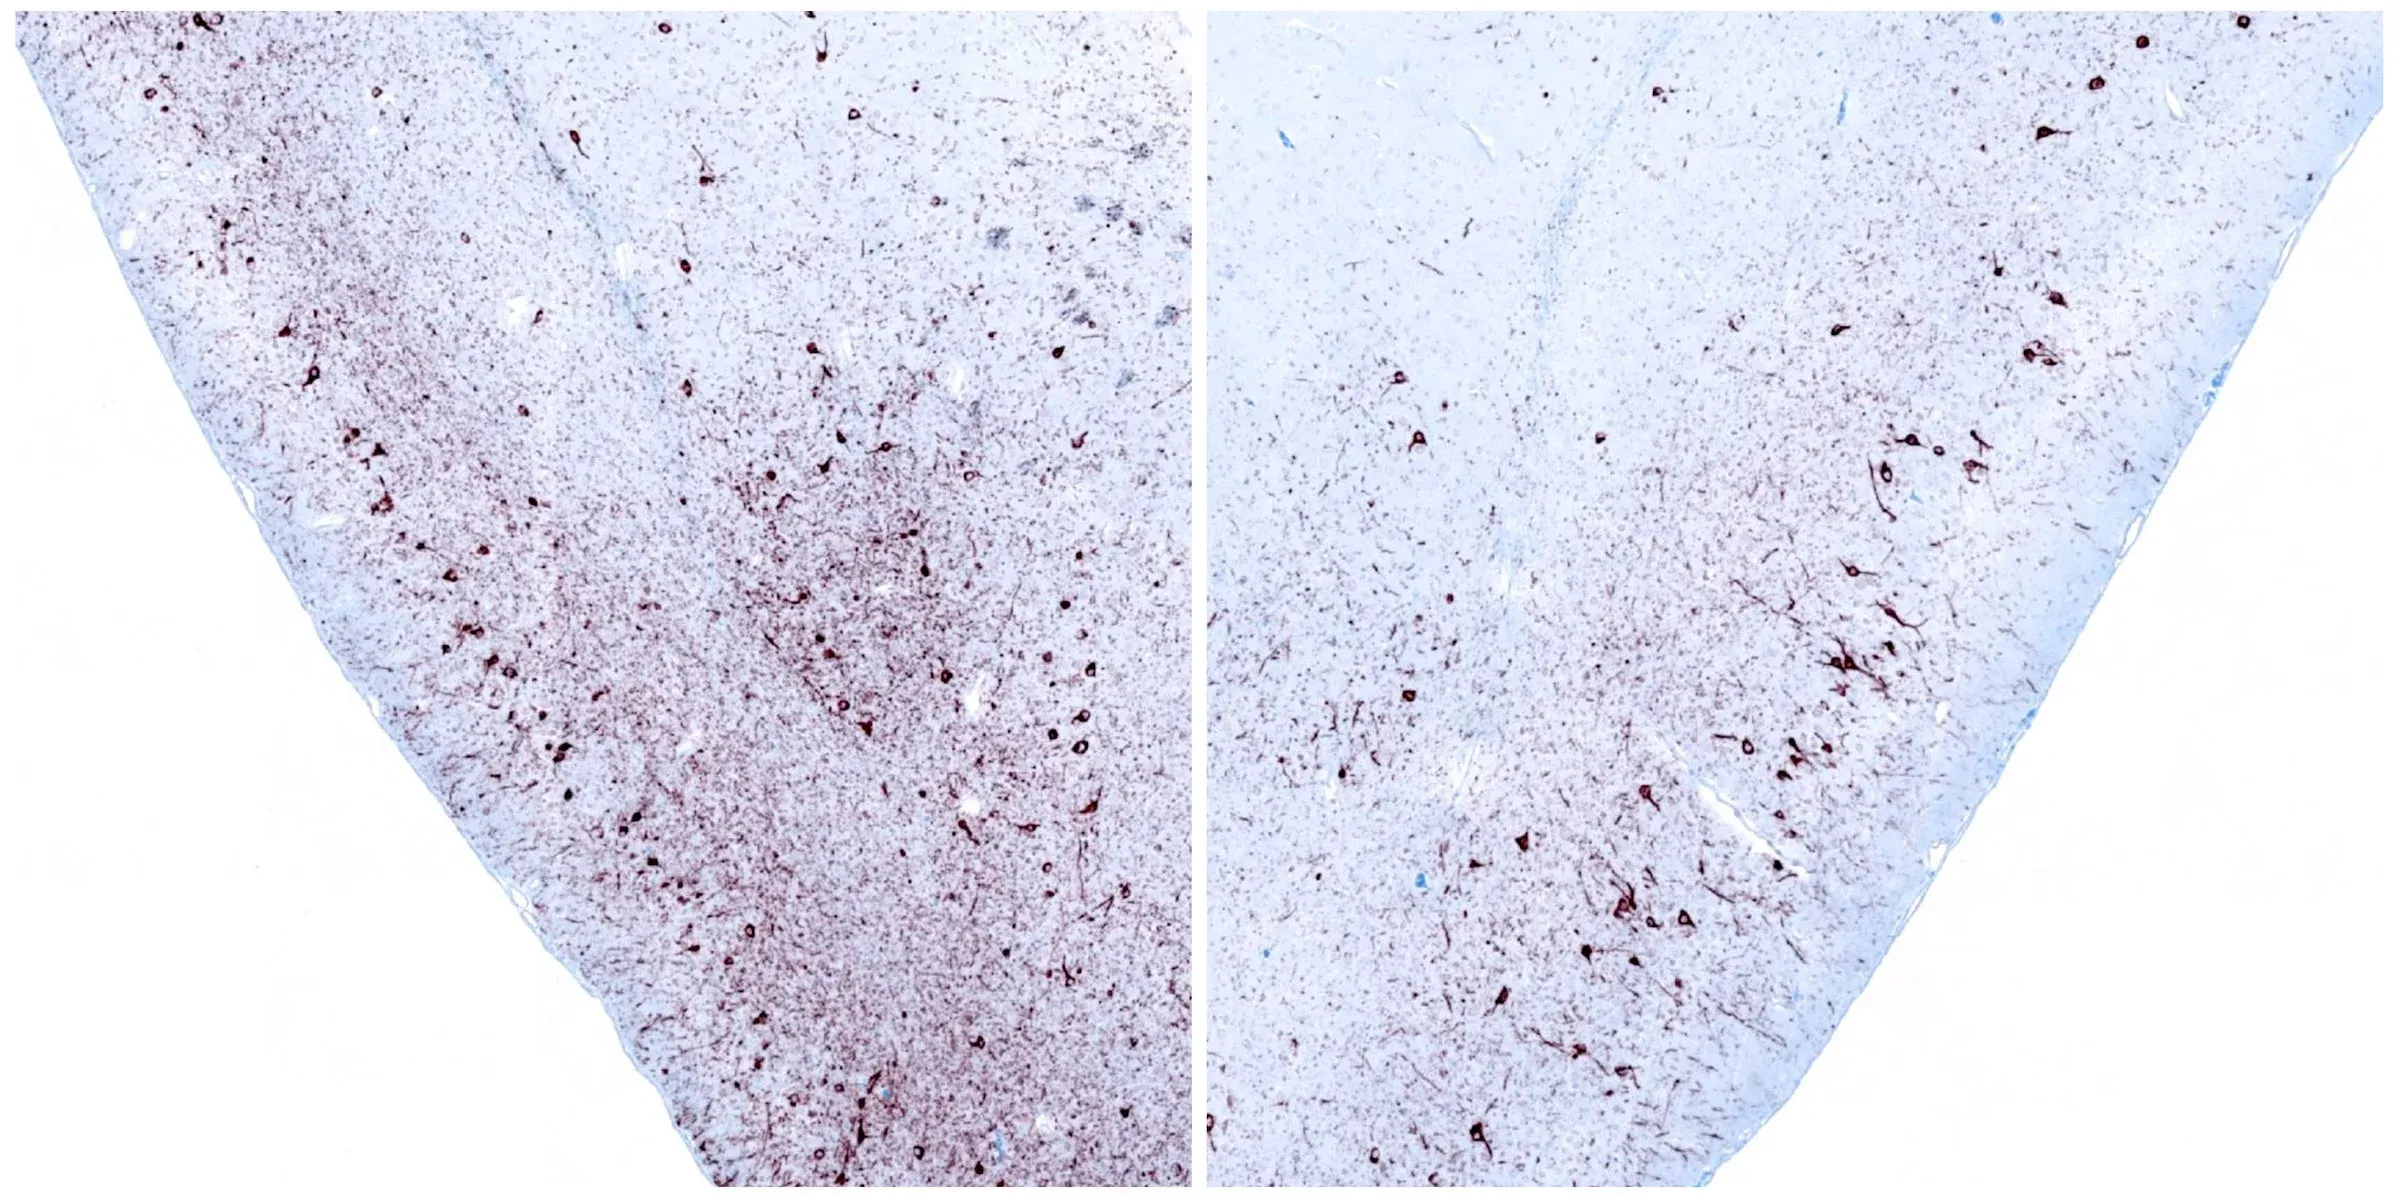 Deux coupes de tissu cérébral traitées par immunohistochimie (IHC) pour mettre en évidence l'alpha-synucléine phosphorylée, qui est importante dans le contexte de la recherche sur la maladie de Parkinson.